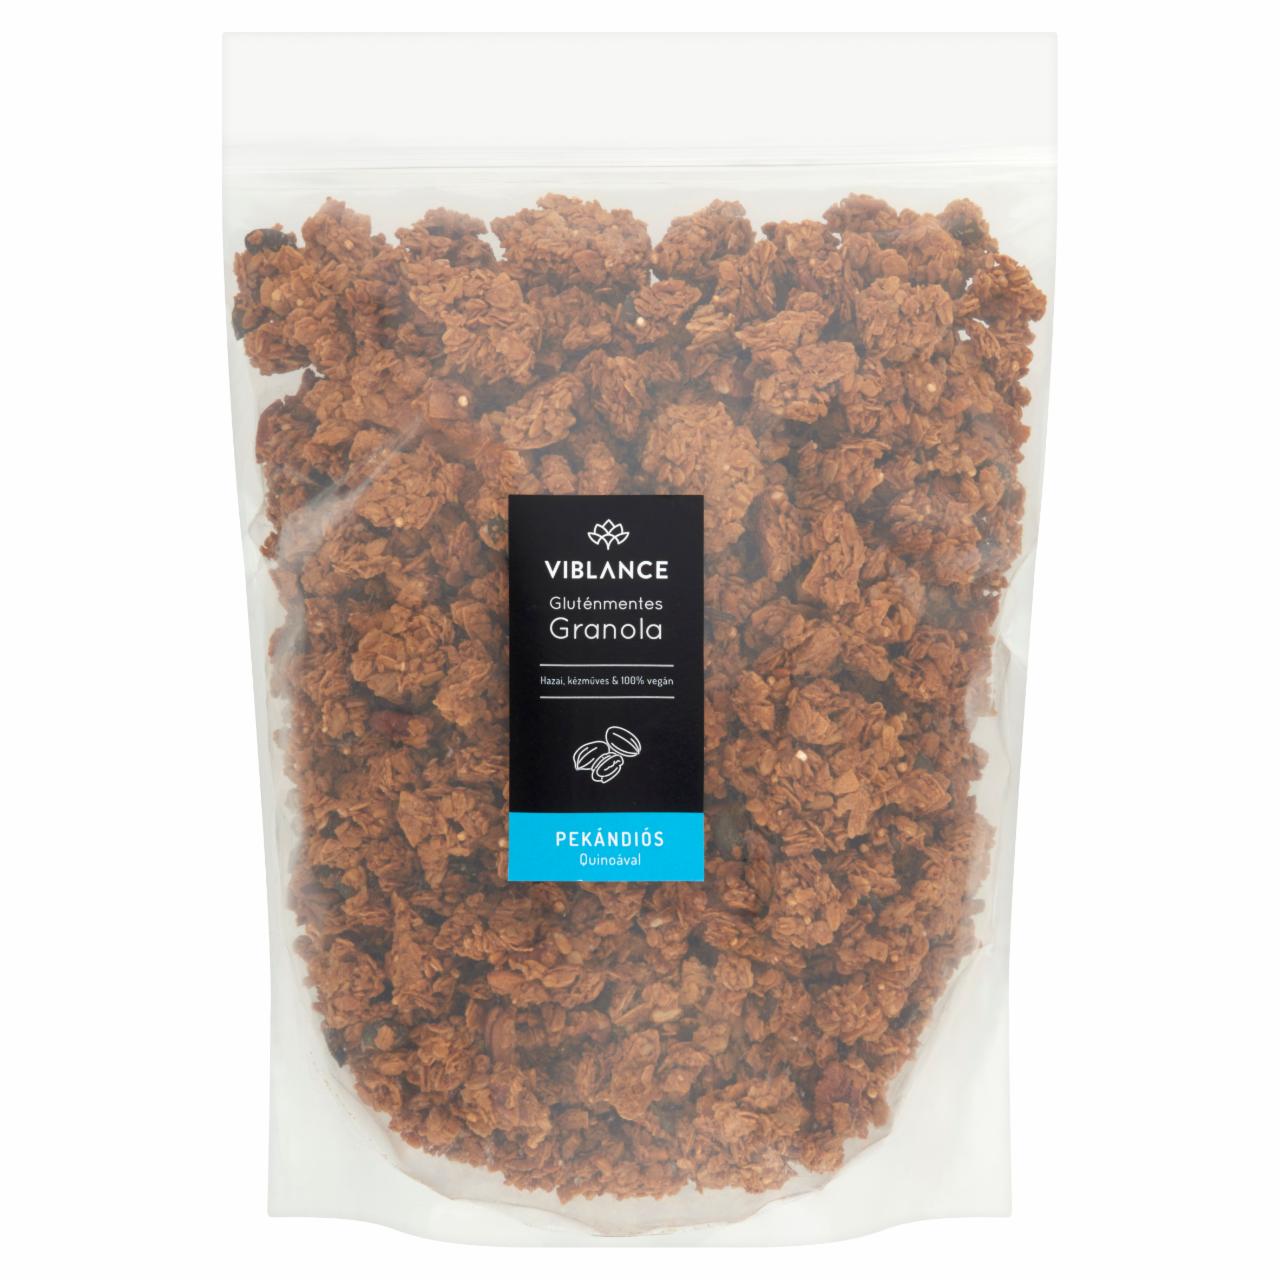 Képek - Viblance gluténmentes granola pekándiós quinoával 2000 g